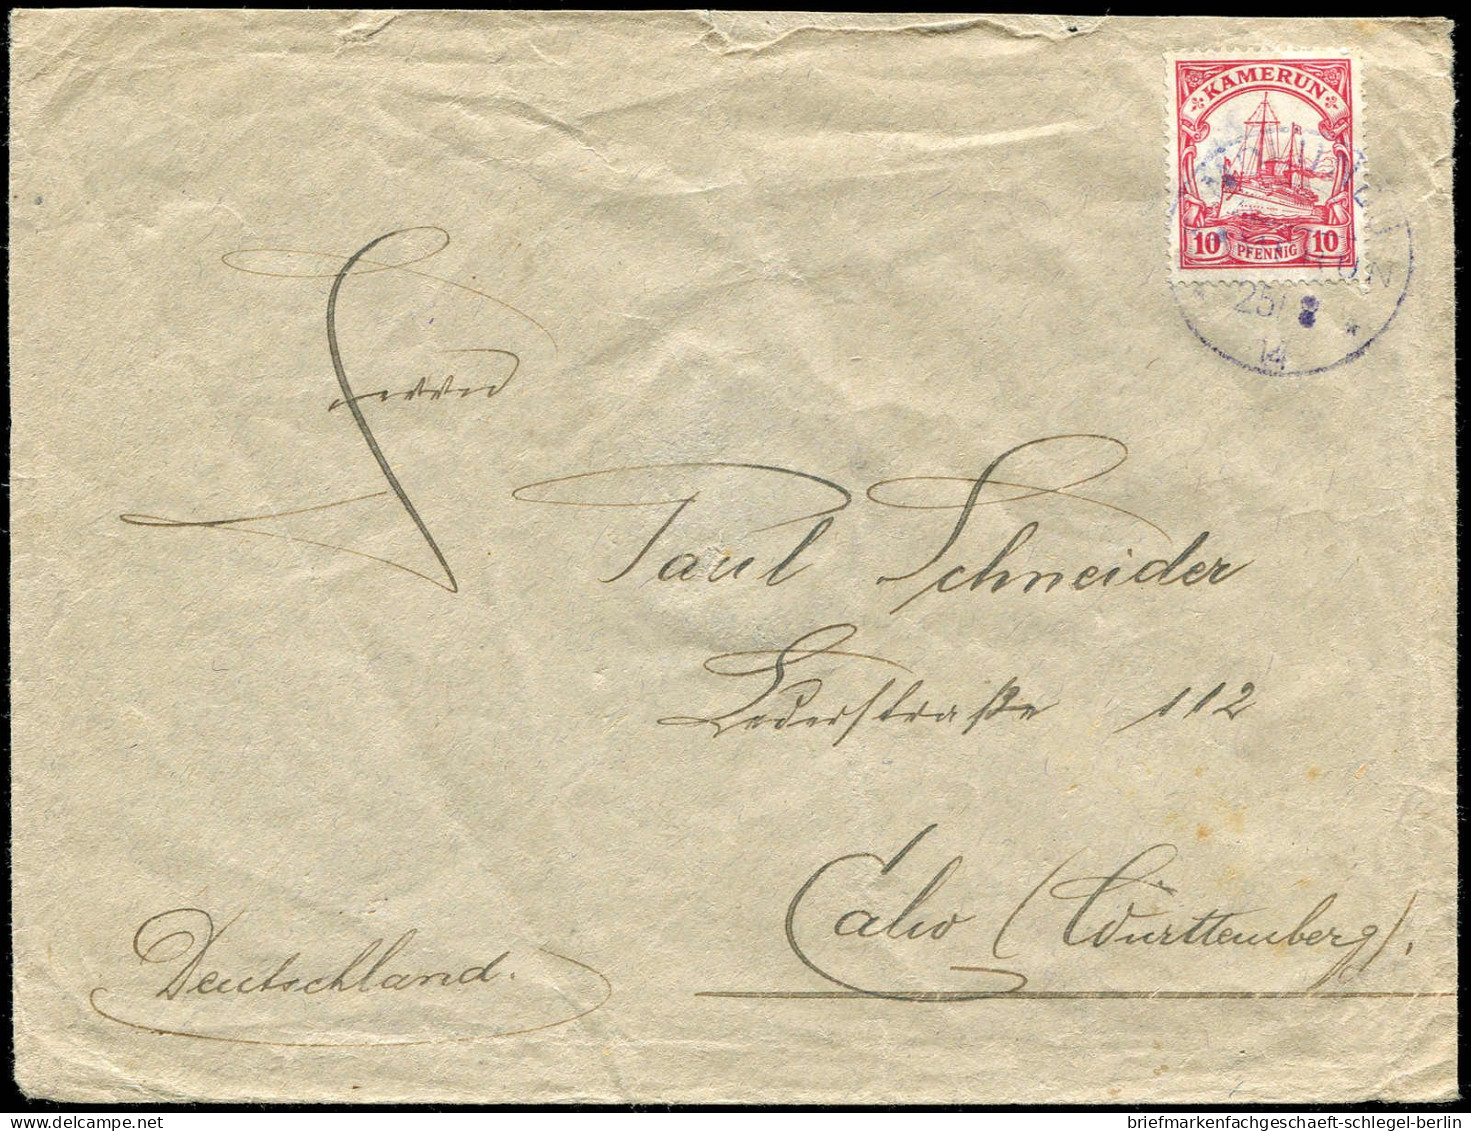 Deutsche Kolonien Kamerun, 1914, Brief - Kameroen